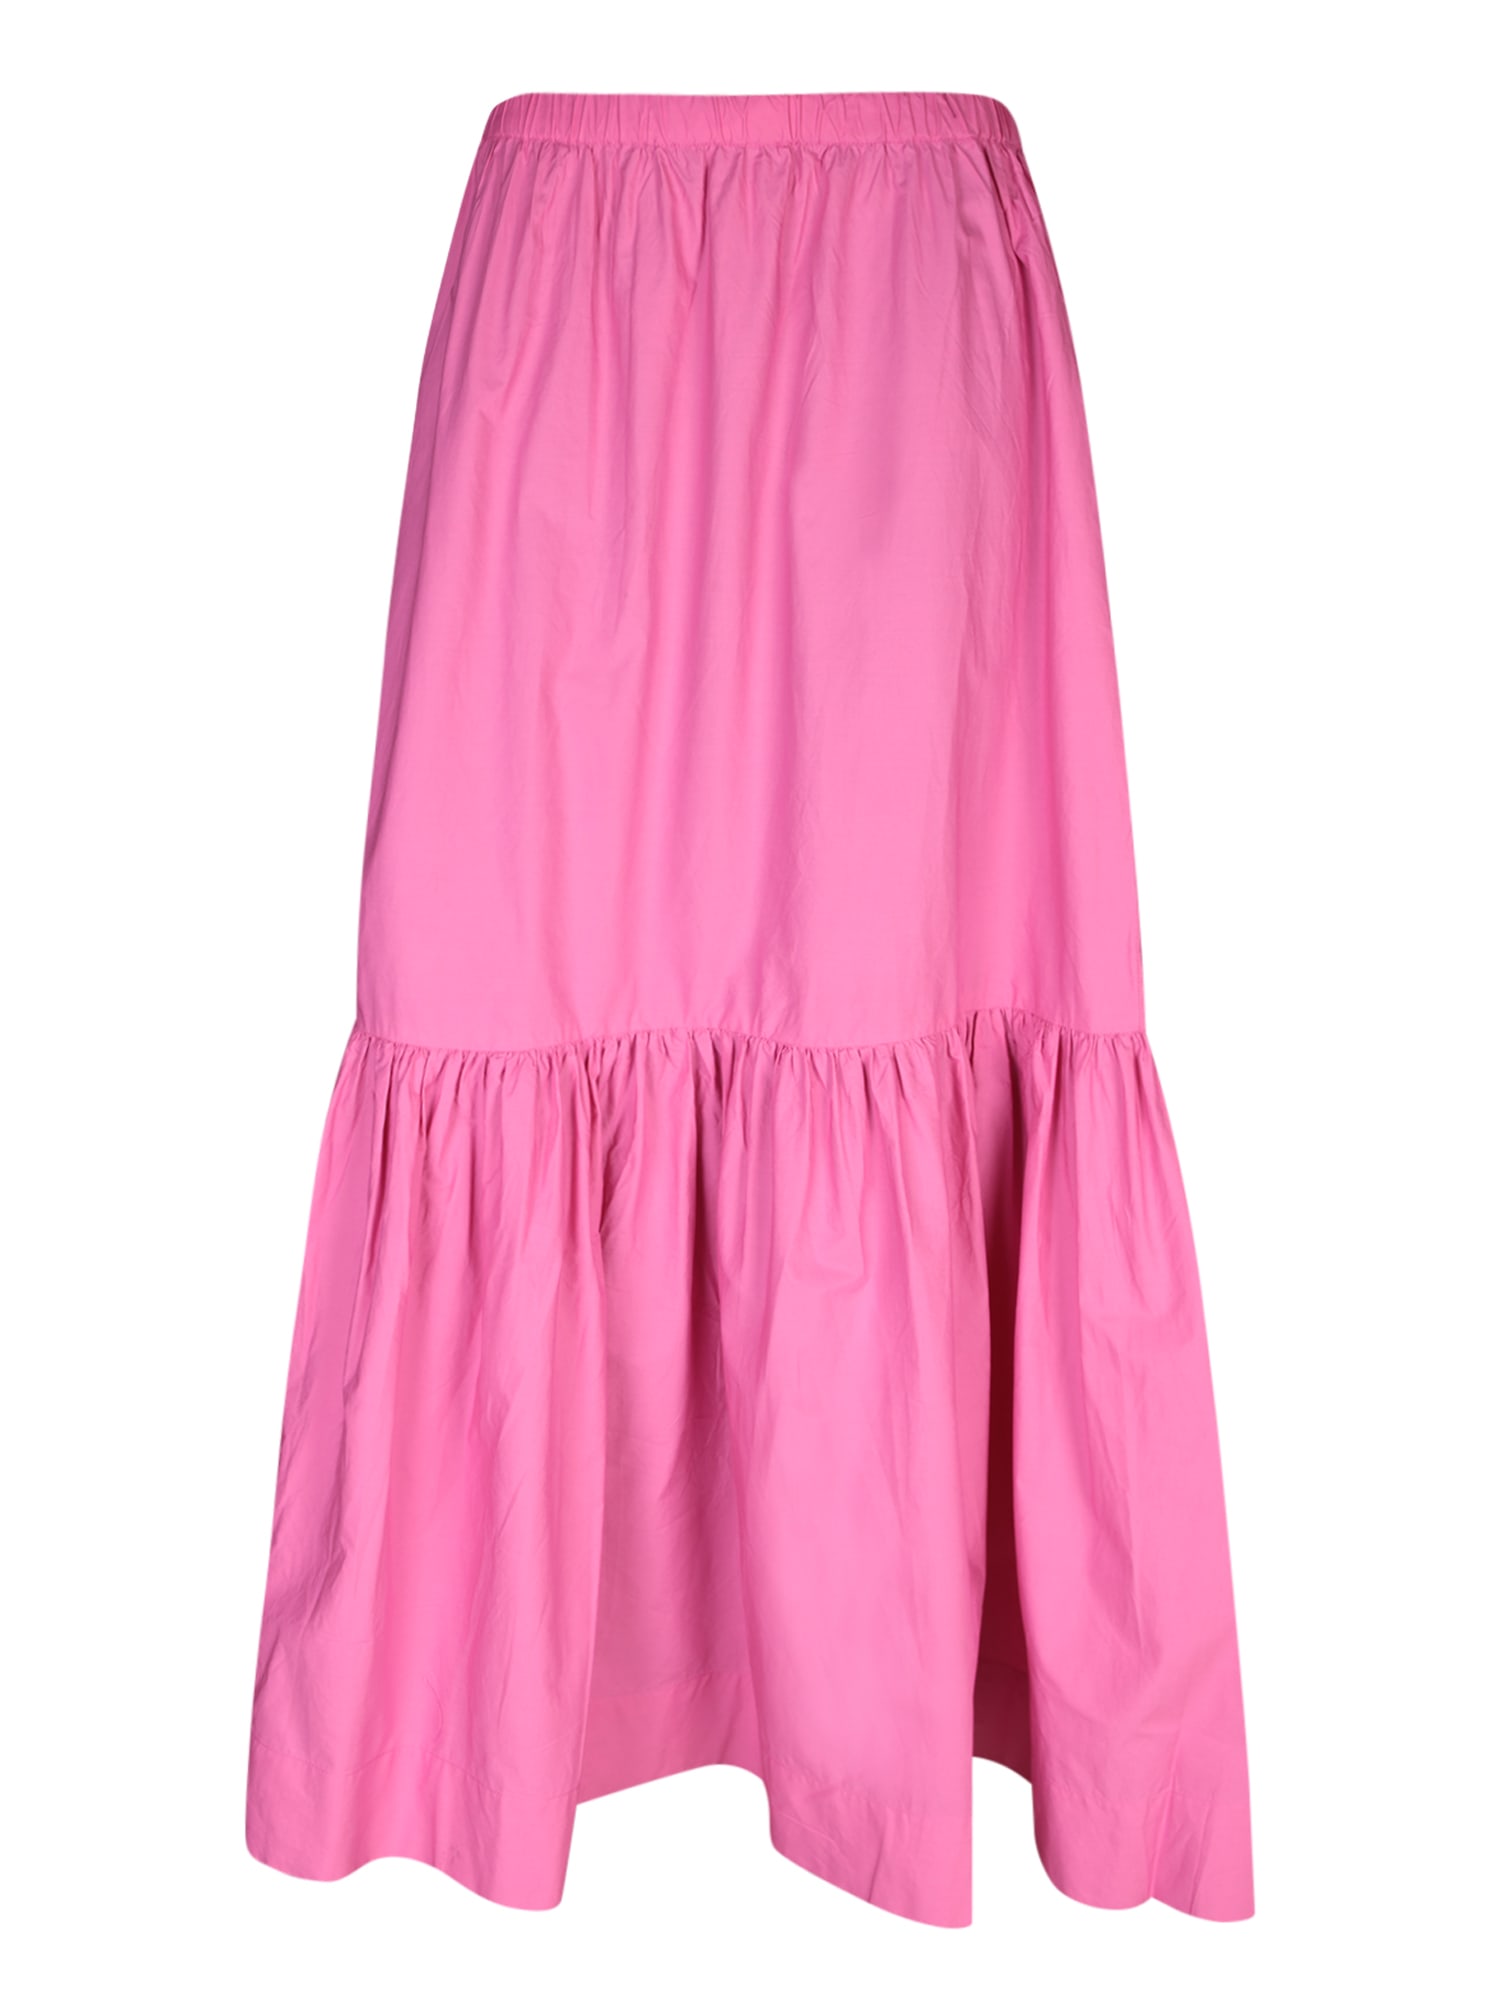 Fuchsia Cotton Skirt